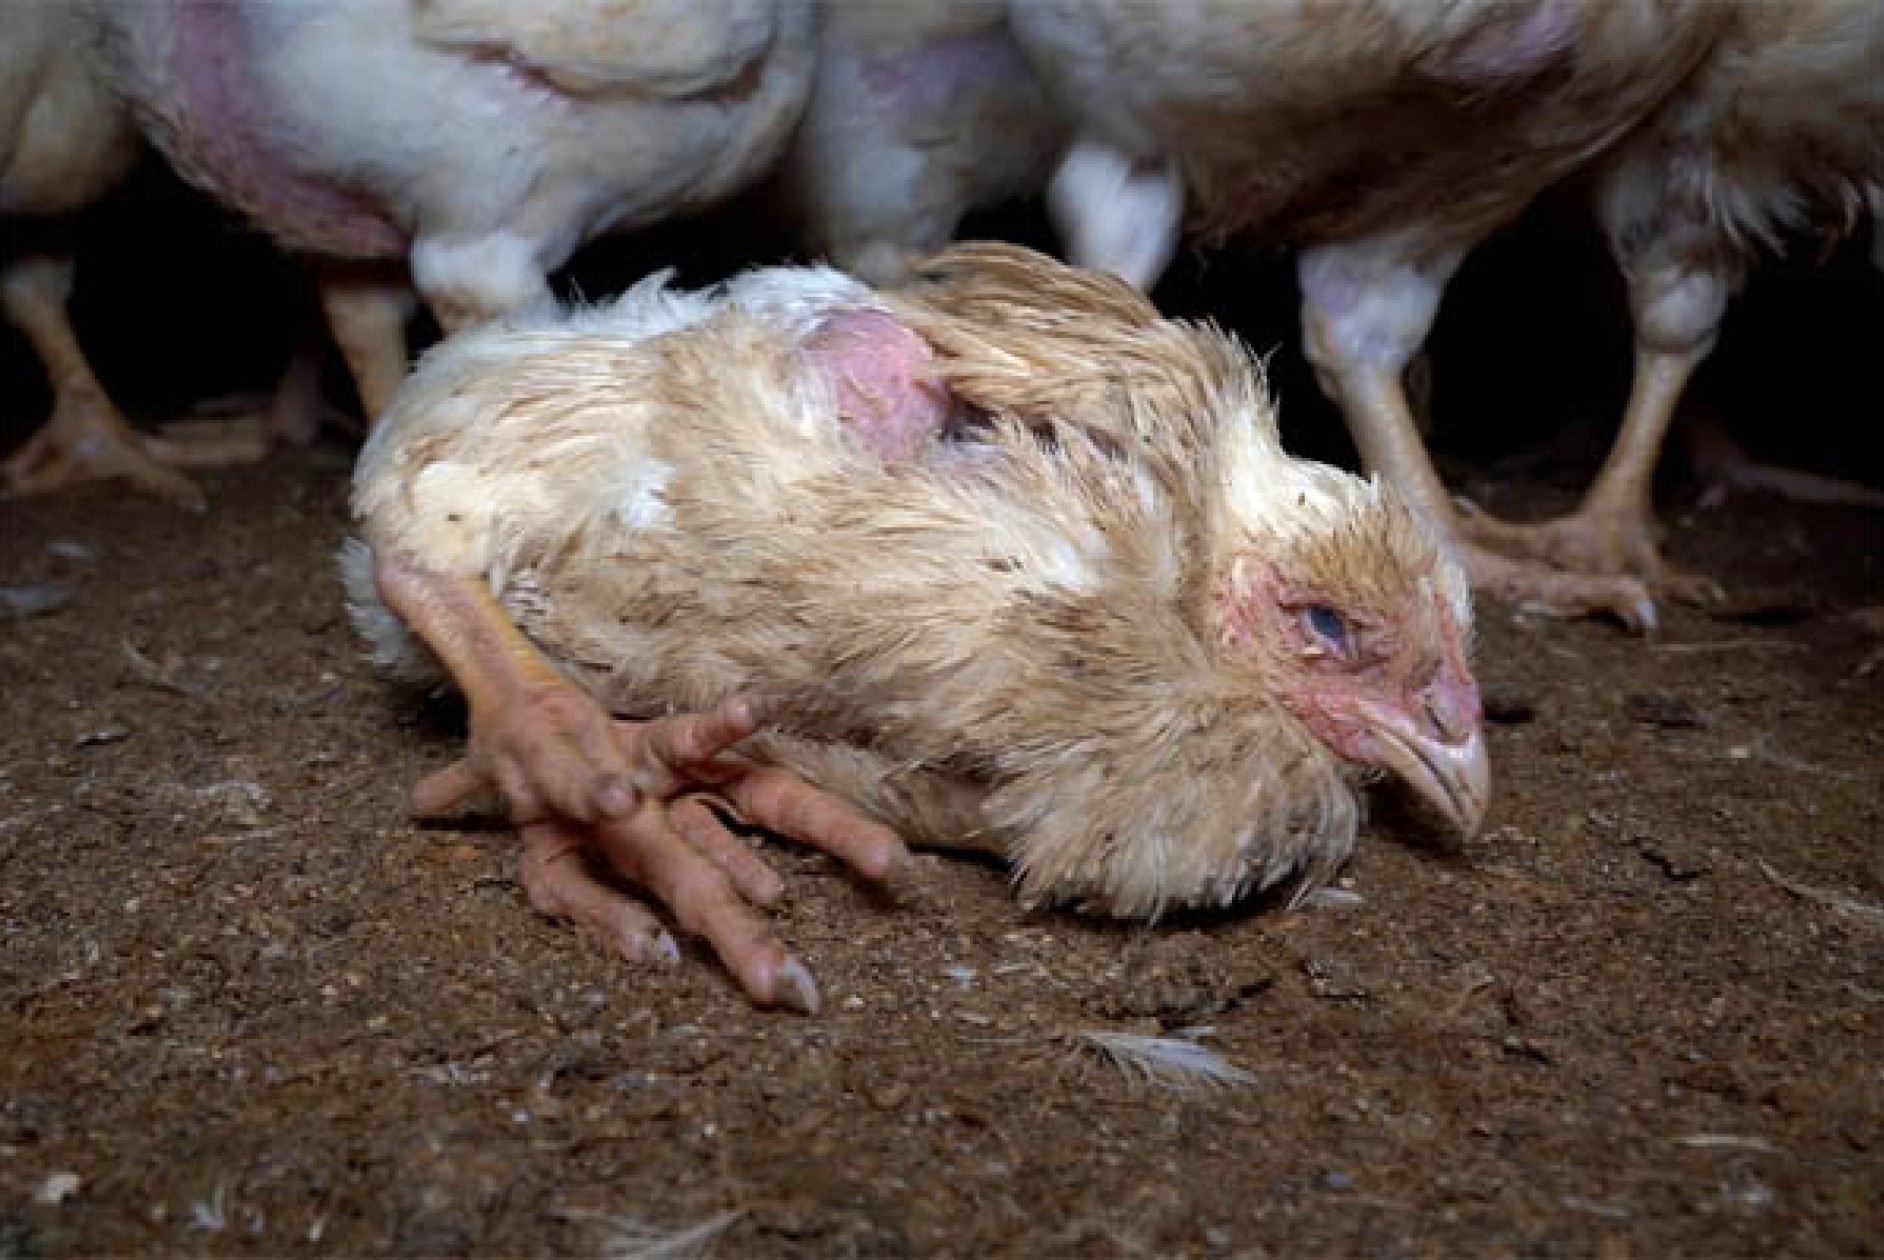 Equalia ONG descubre canibalismo, ataques al corazón y deformidades en granjas avícolas alemanas relacionadas con un proveedor de Lidl